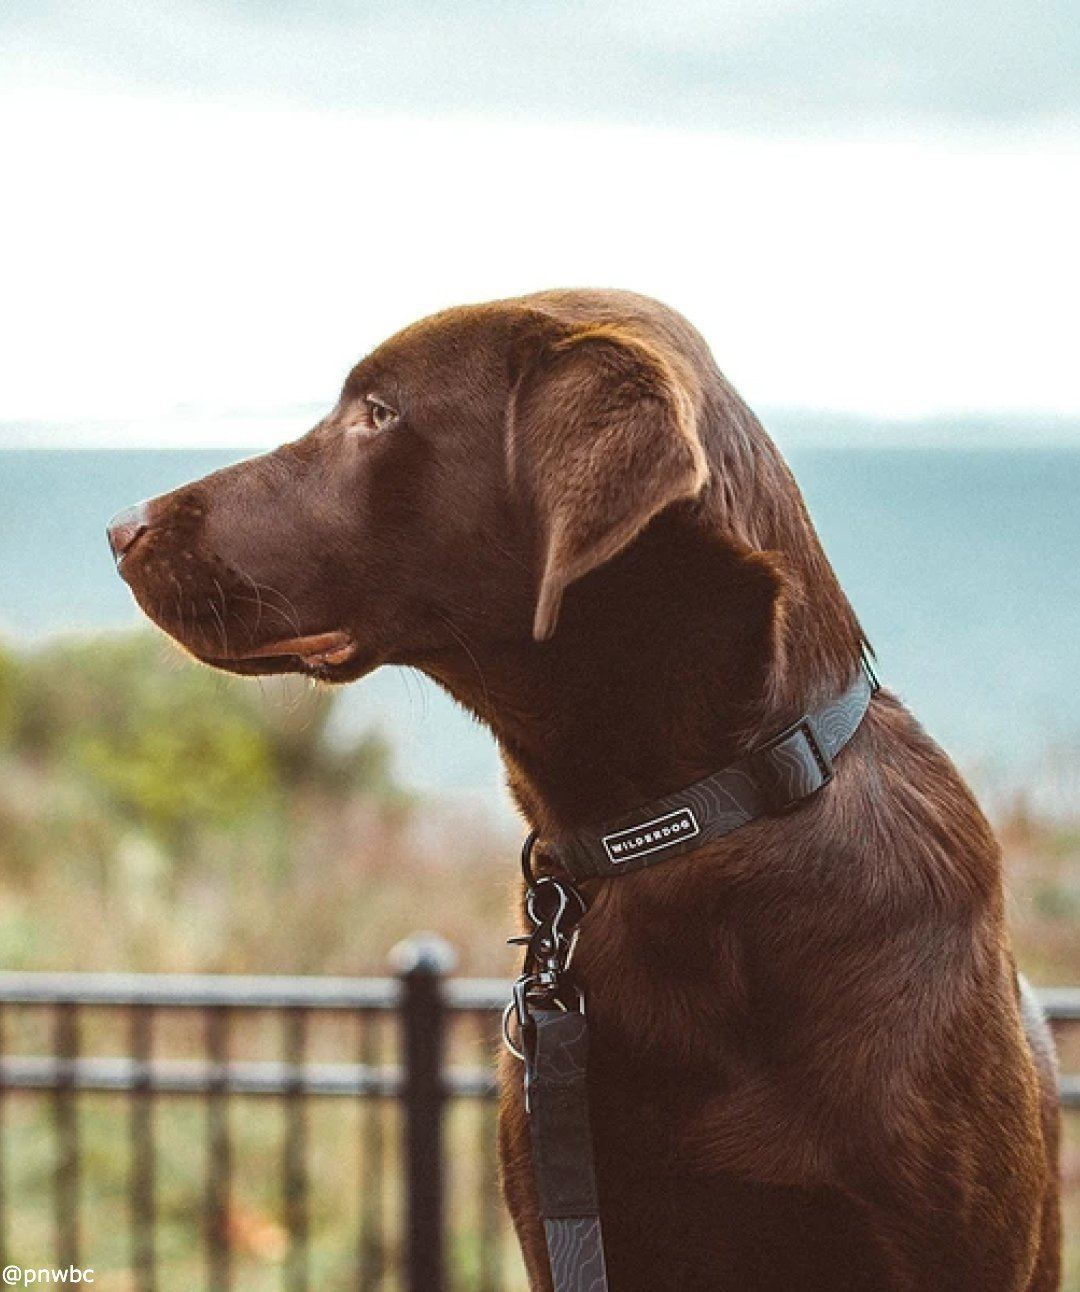 Wilderdog Waterproof Dog Collar Collar Wilderdog 